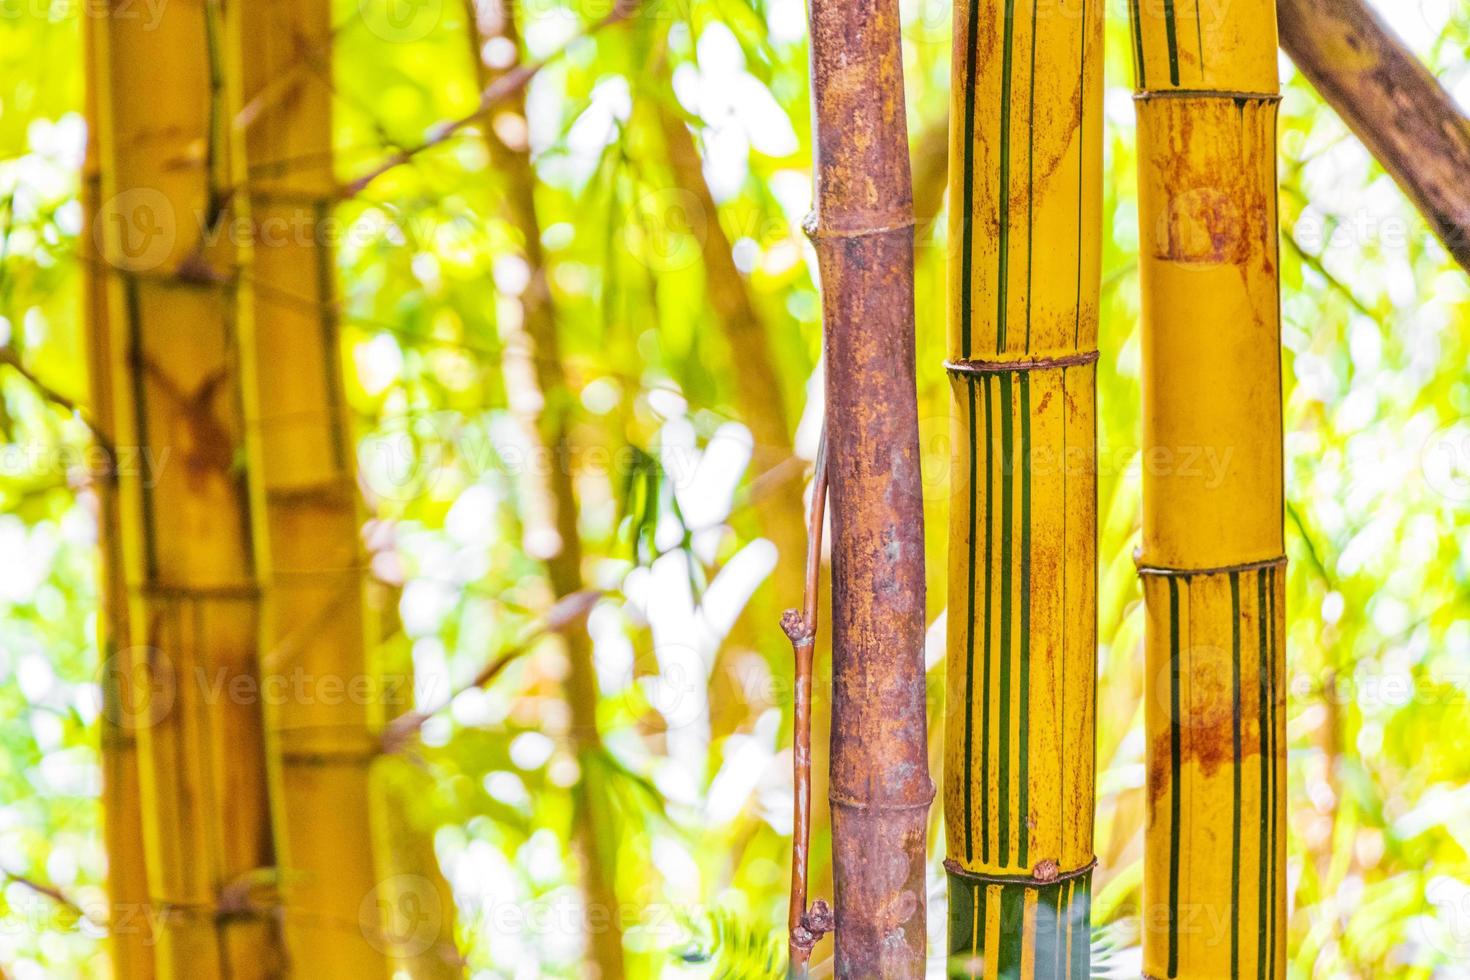 alberi di bambù giallo verde foresta tropicale san jose costa rica. foto